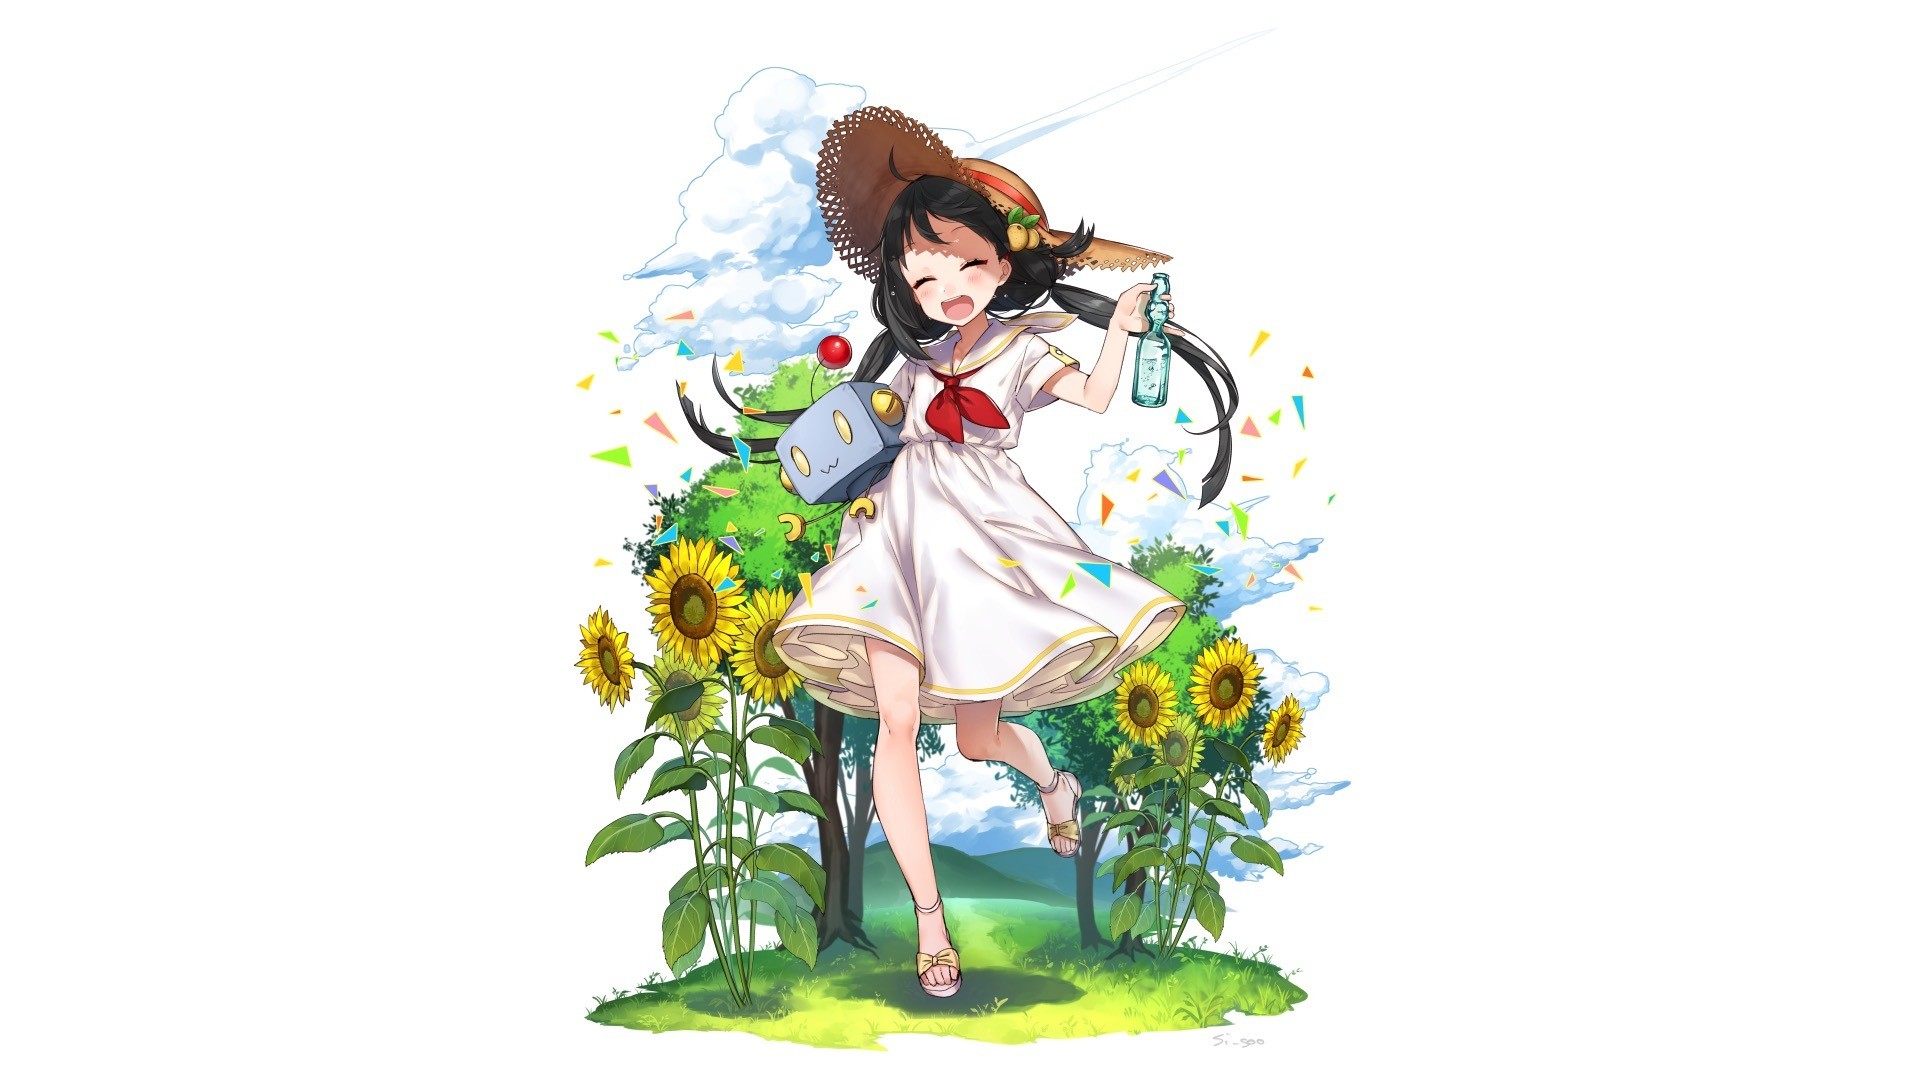 Wallpaper Fun, joy, outdoor, original, anime girl